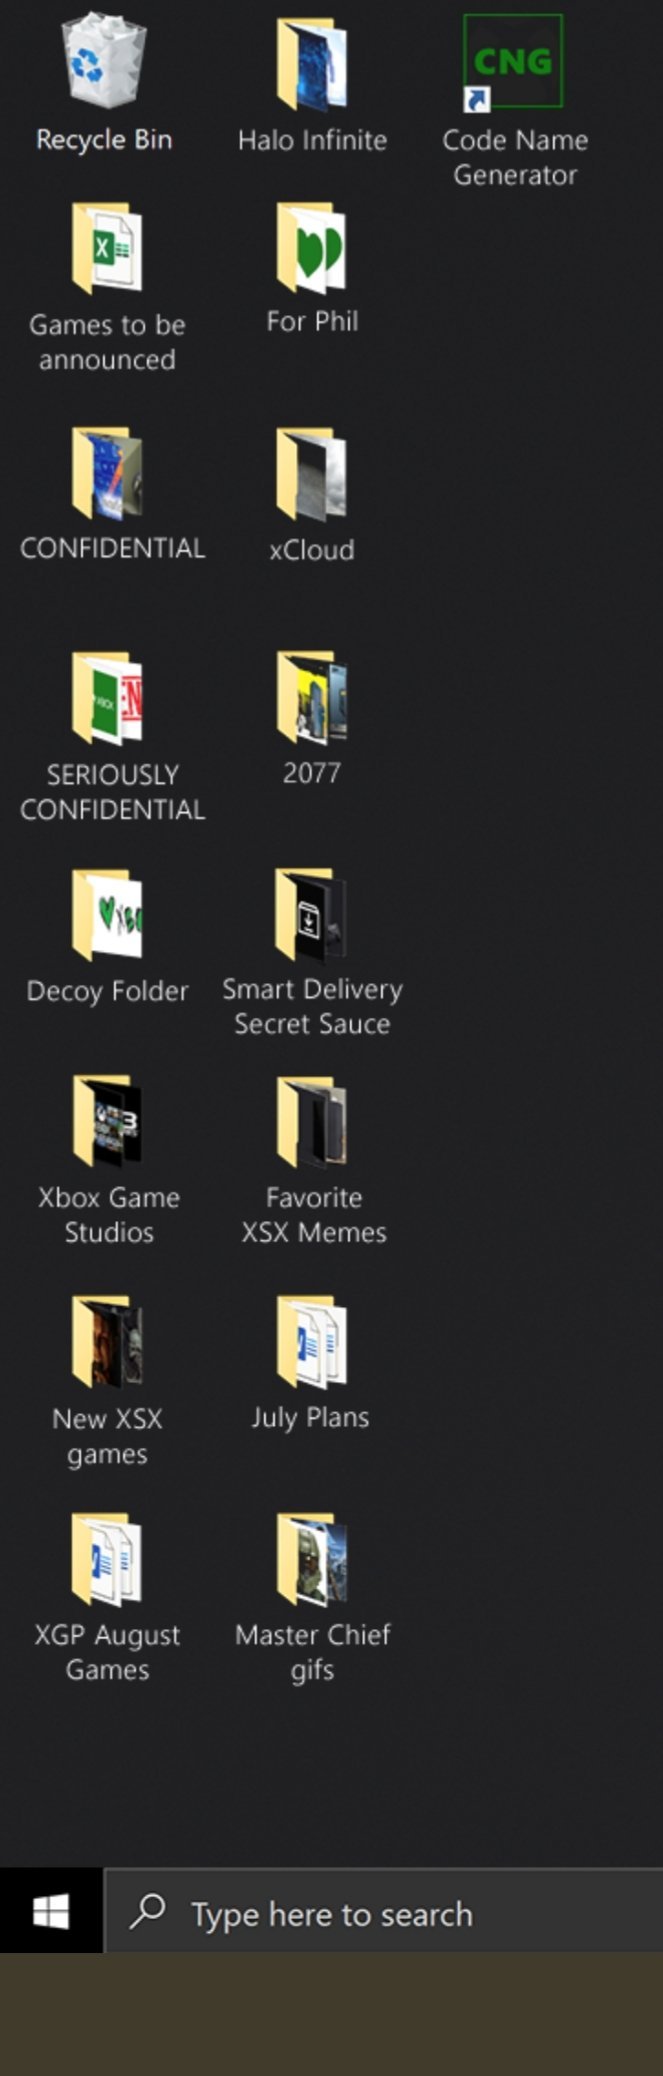 微硬推出免费Win10的Xbox Series X主题 很多彩蛋